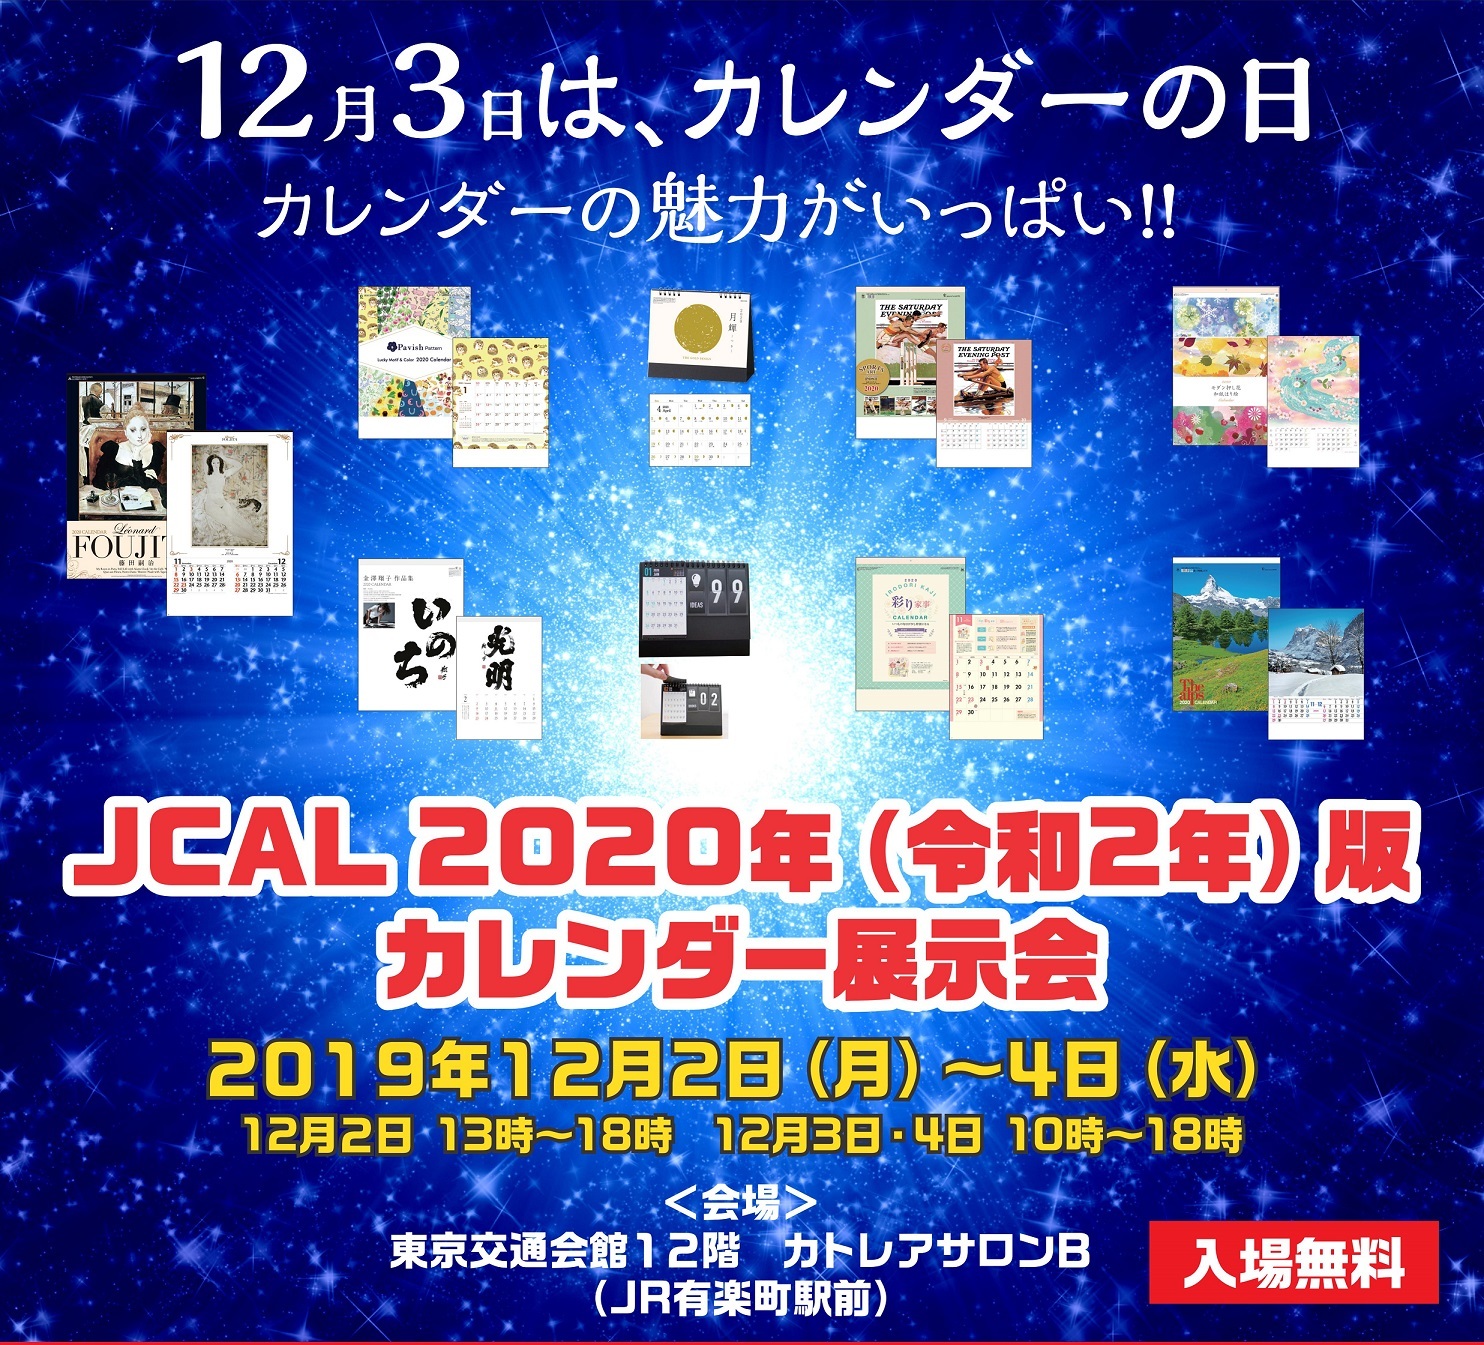 12月3日はカレンダーの日 Jcal 2020年 令和2年 版カレンダー展示会